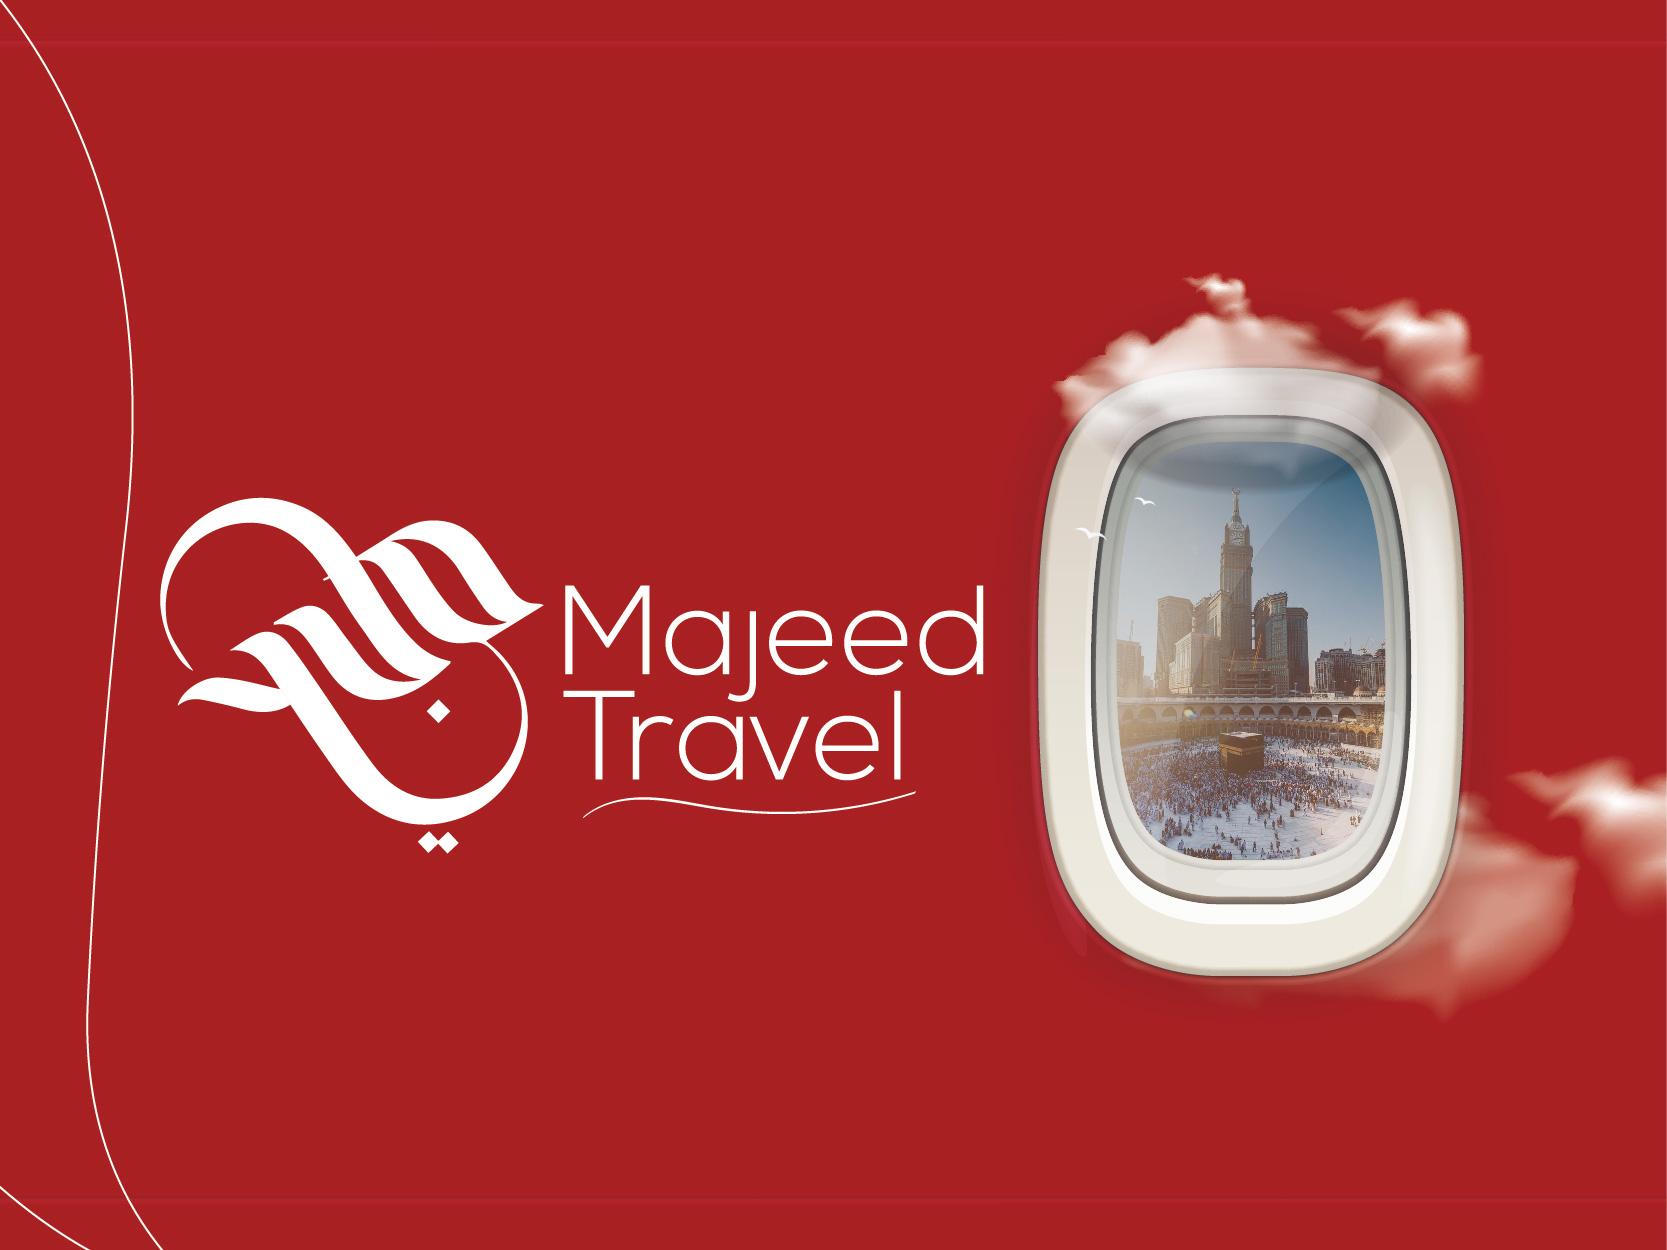 sonia majeed travel